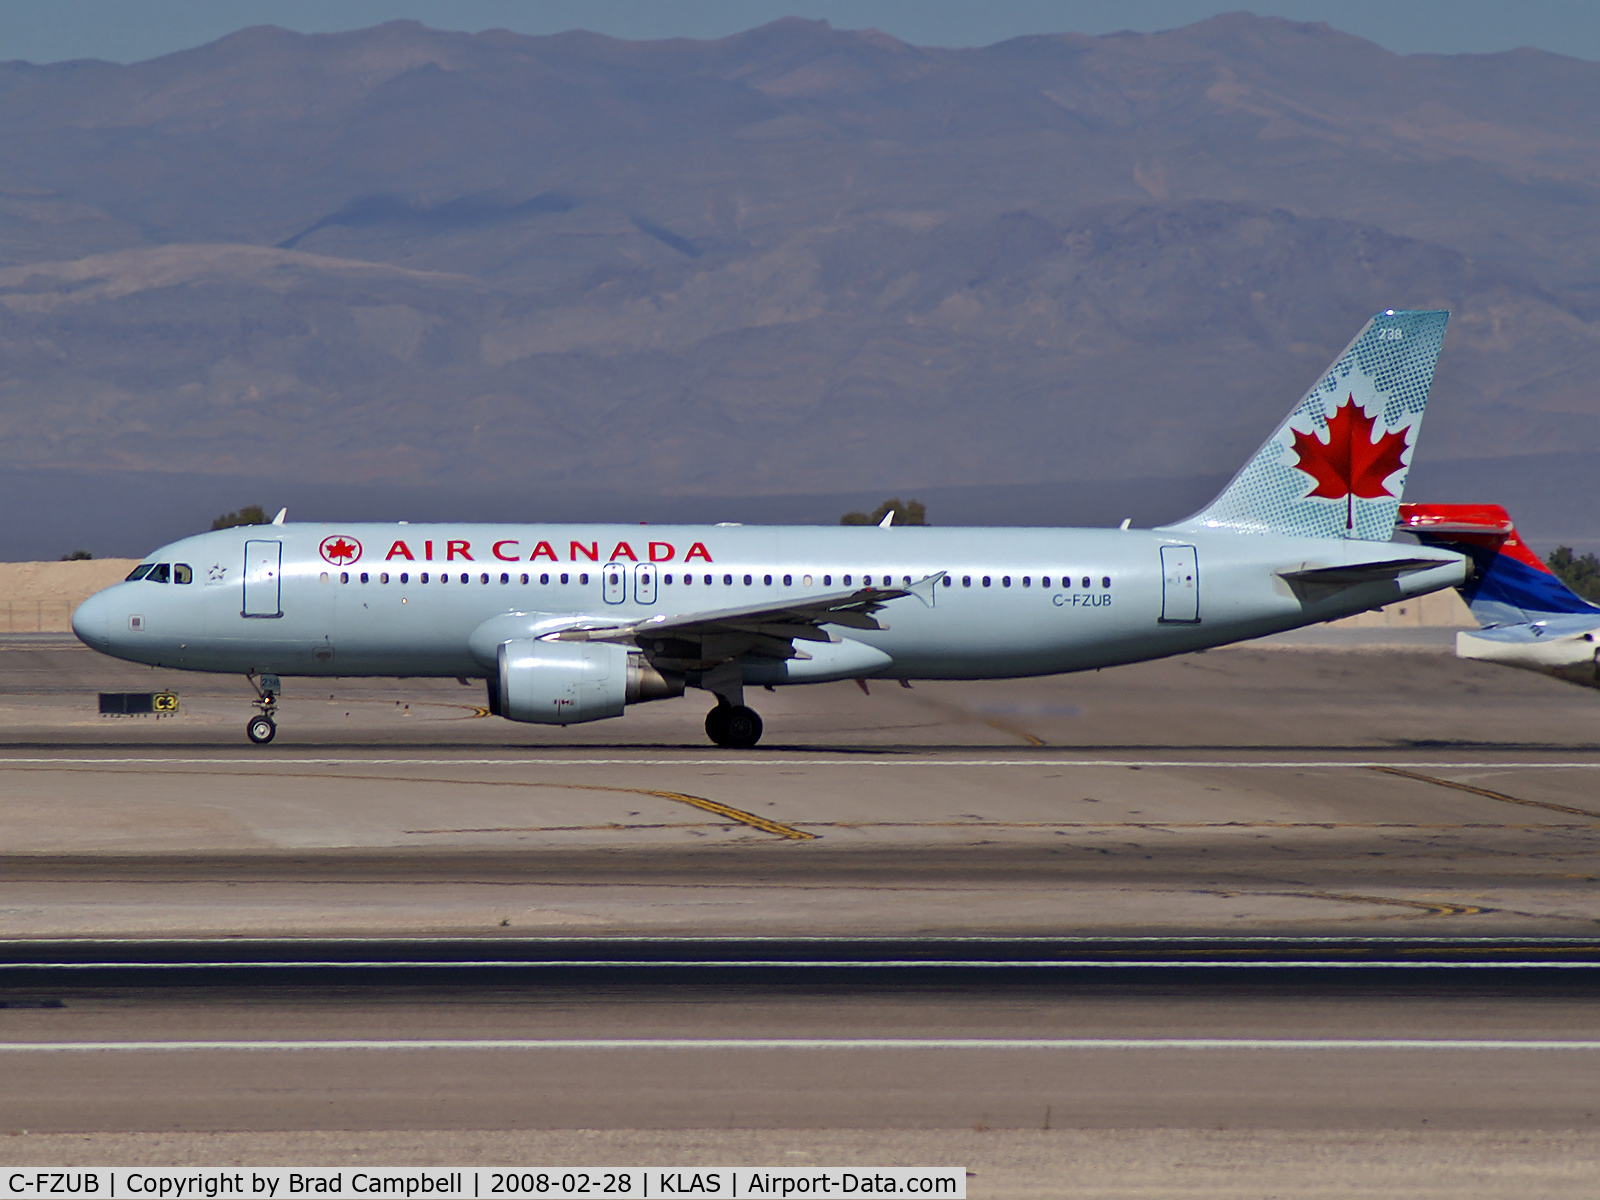 C-FZUB, 2003 Airbus A320-214 C/N 1940, Air Canada / 2003 Airbus A320-214